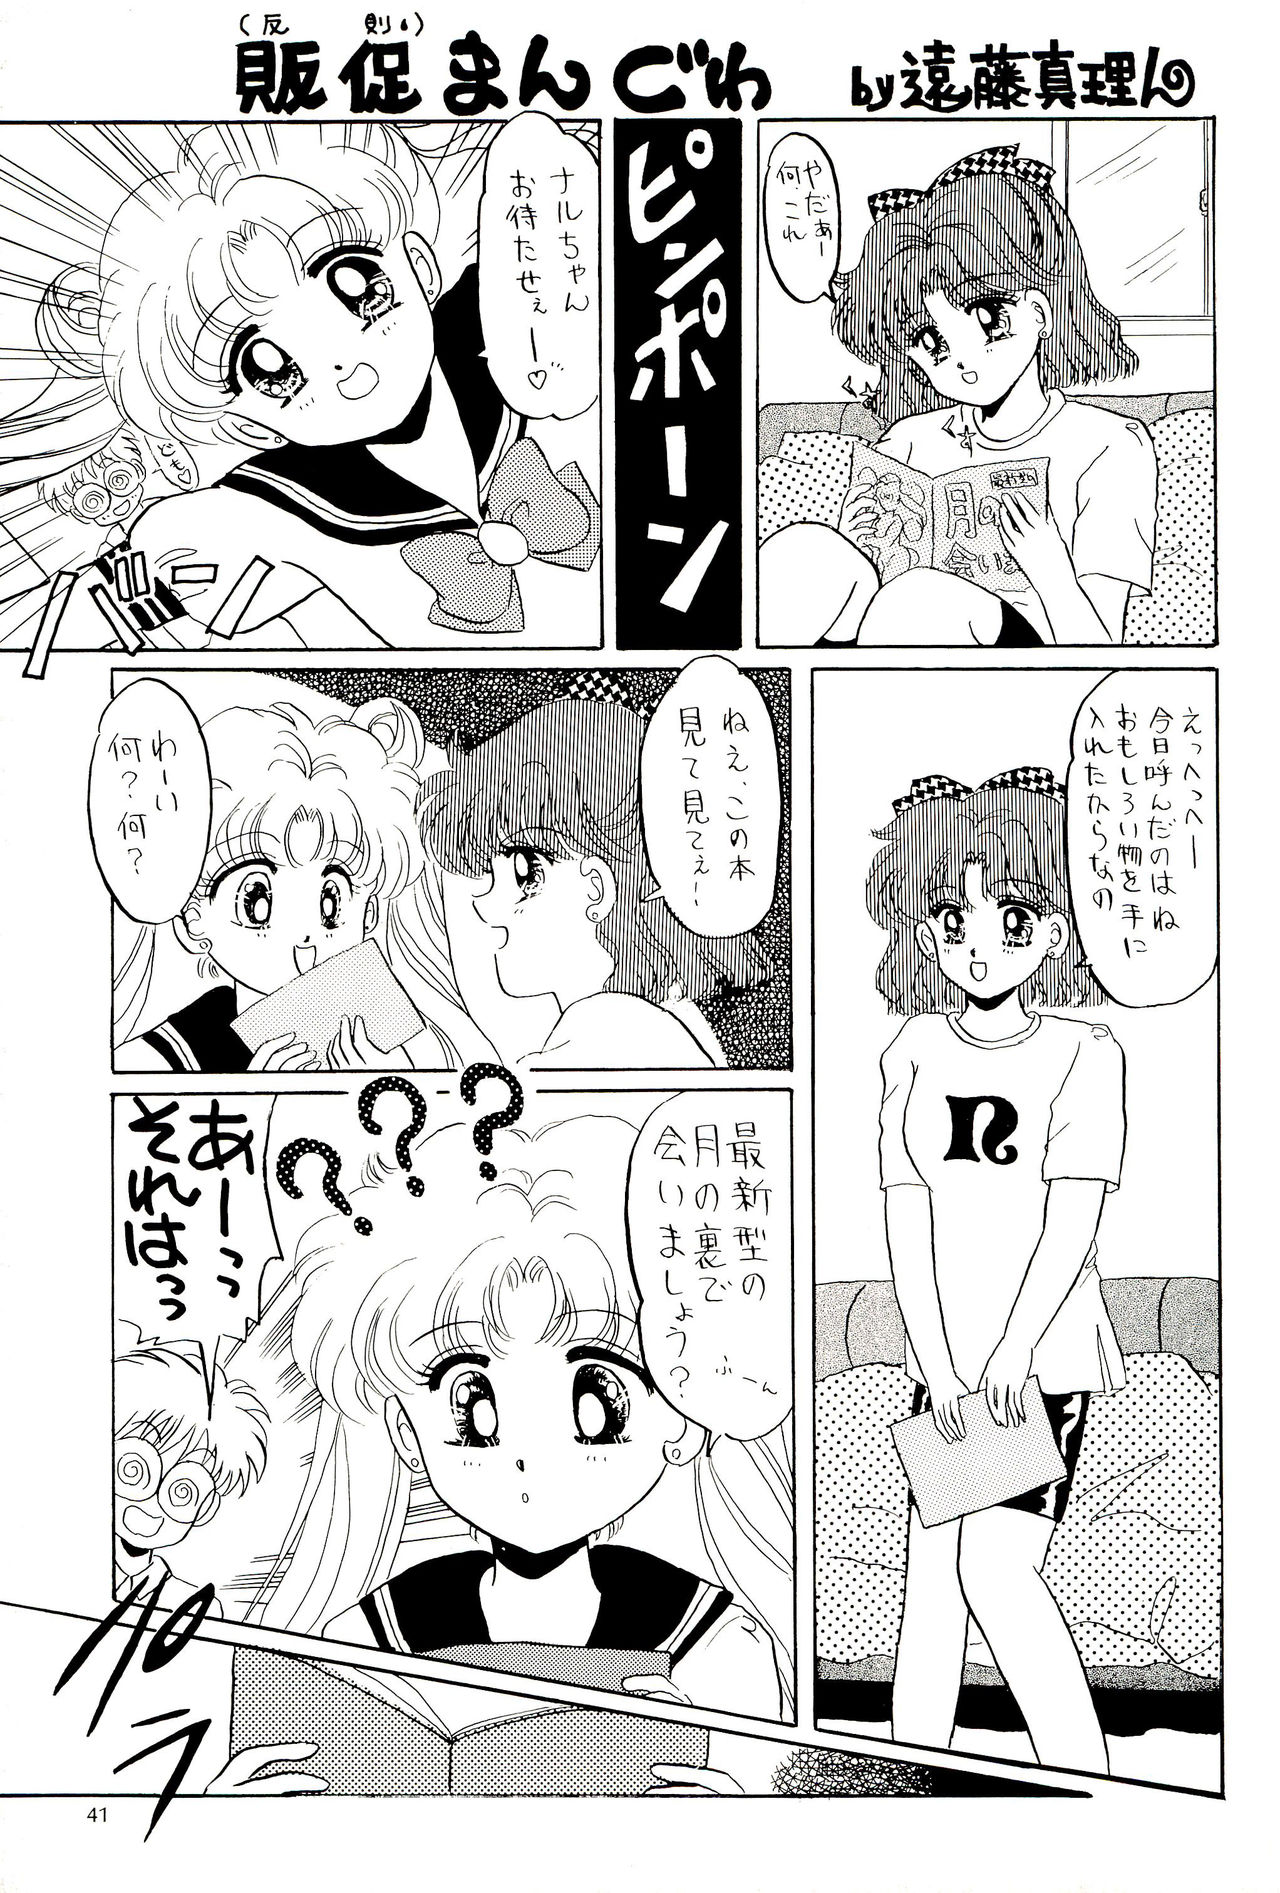 (C44) [M.C.B (Various)] Tsuki no Ura no Labyrinth (Sailor Moon) page 41 full